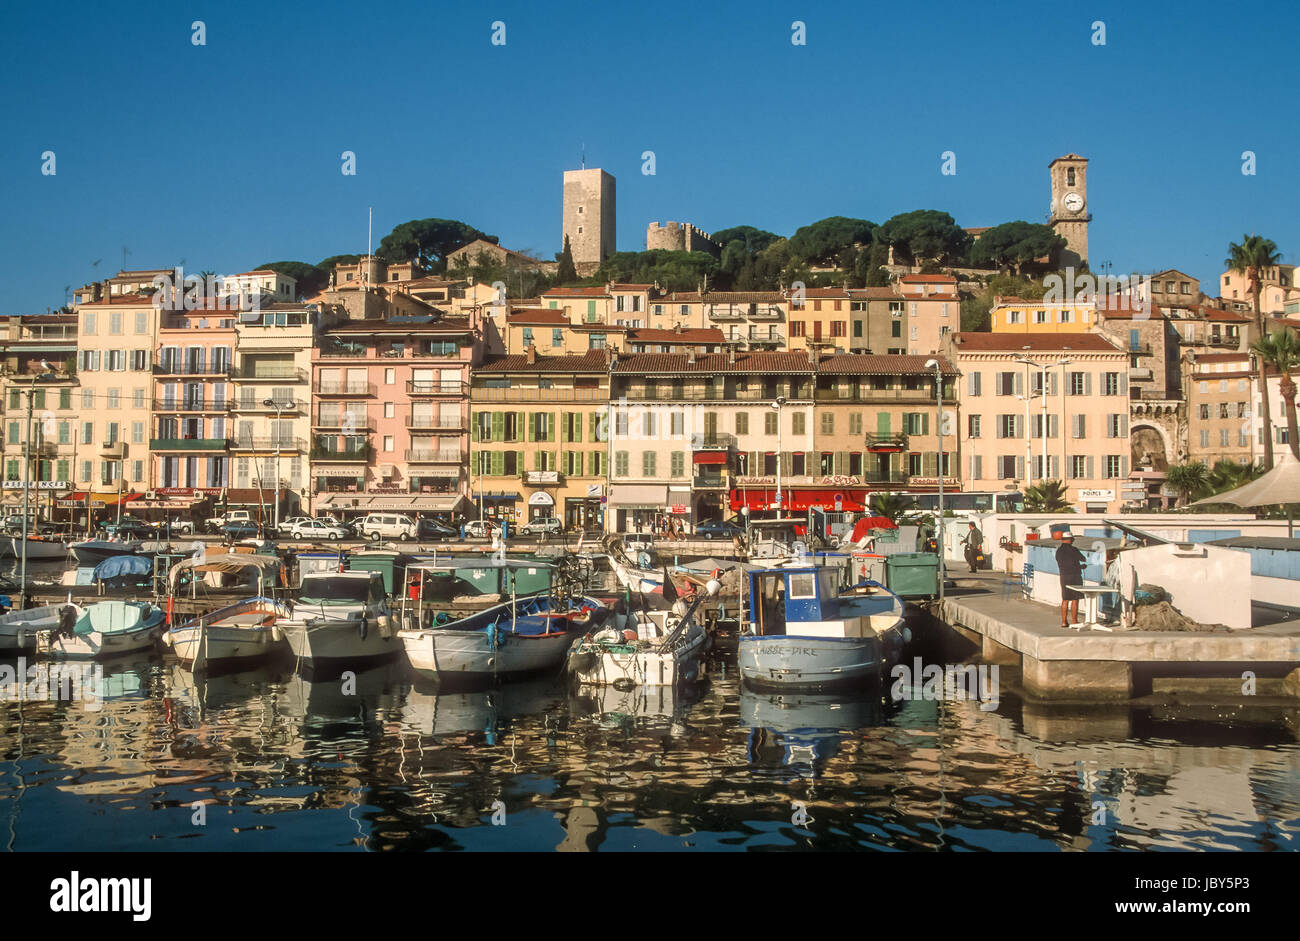 Hafen und Altstadt von Cannes, Cote Azur, Frankreich Stock Photo - Alamy